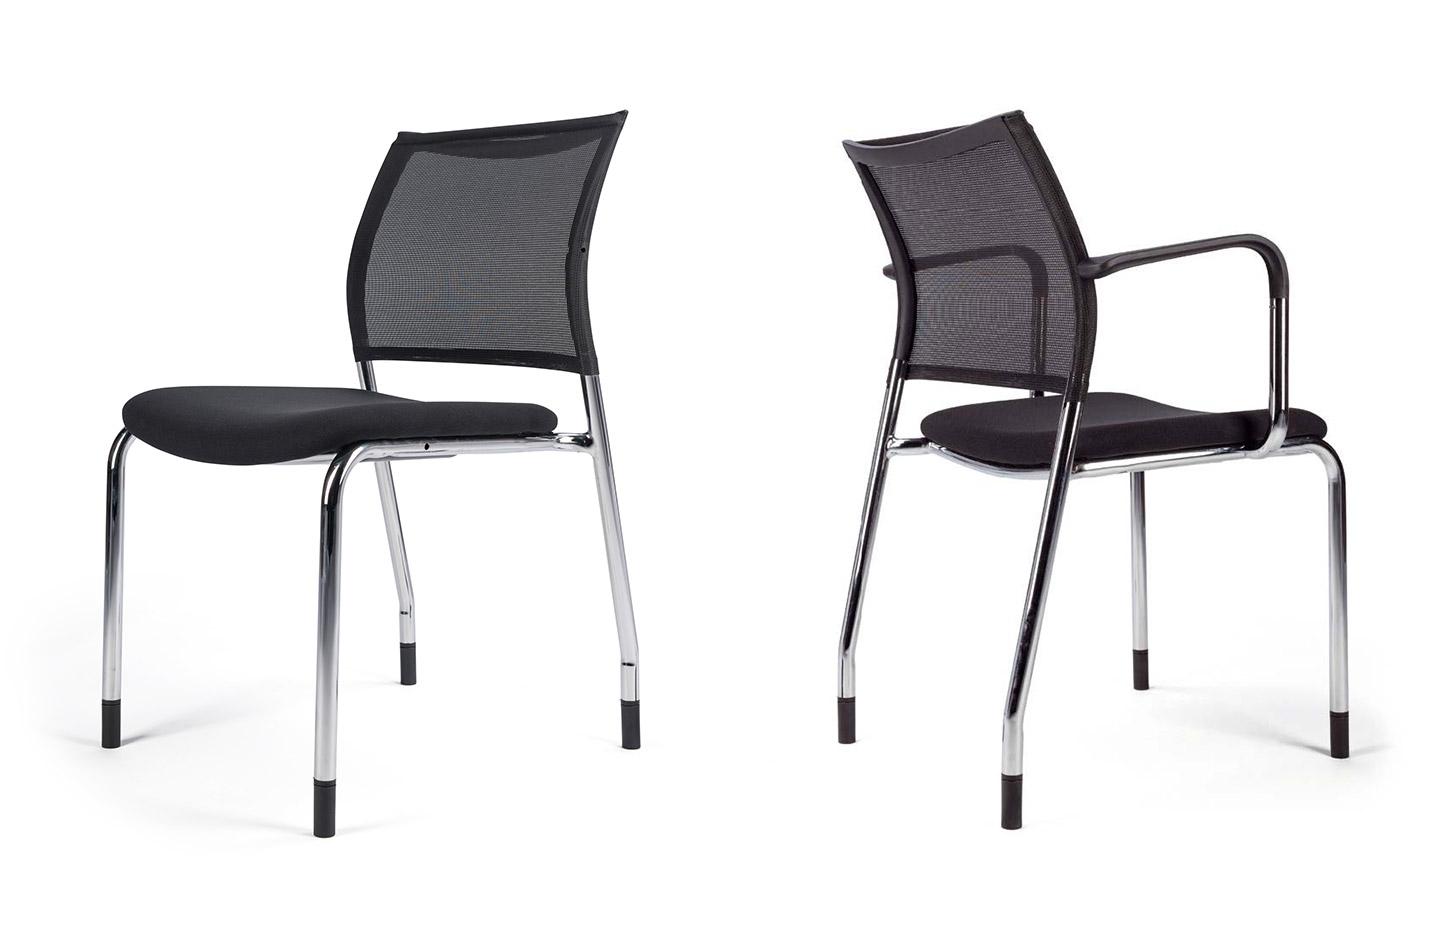 Siège de réunion dossier résille noir et assise tissu noir, gamme Pontis, France Bureau